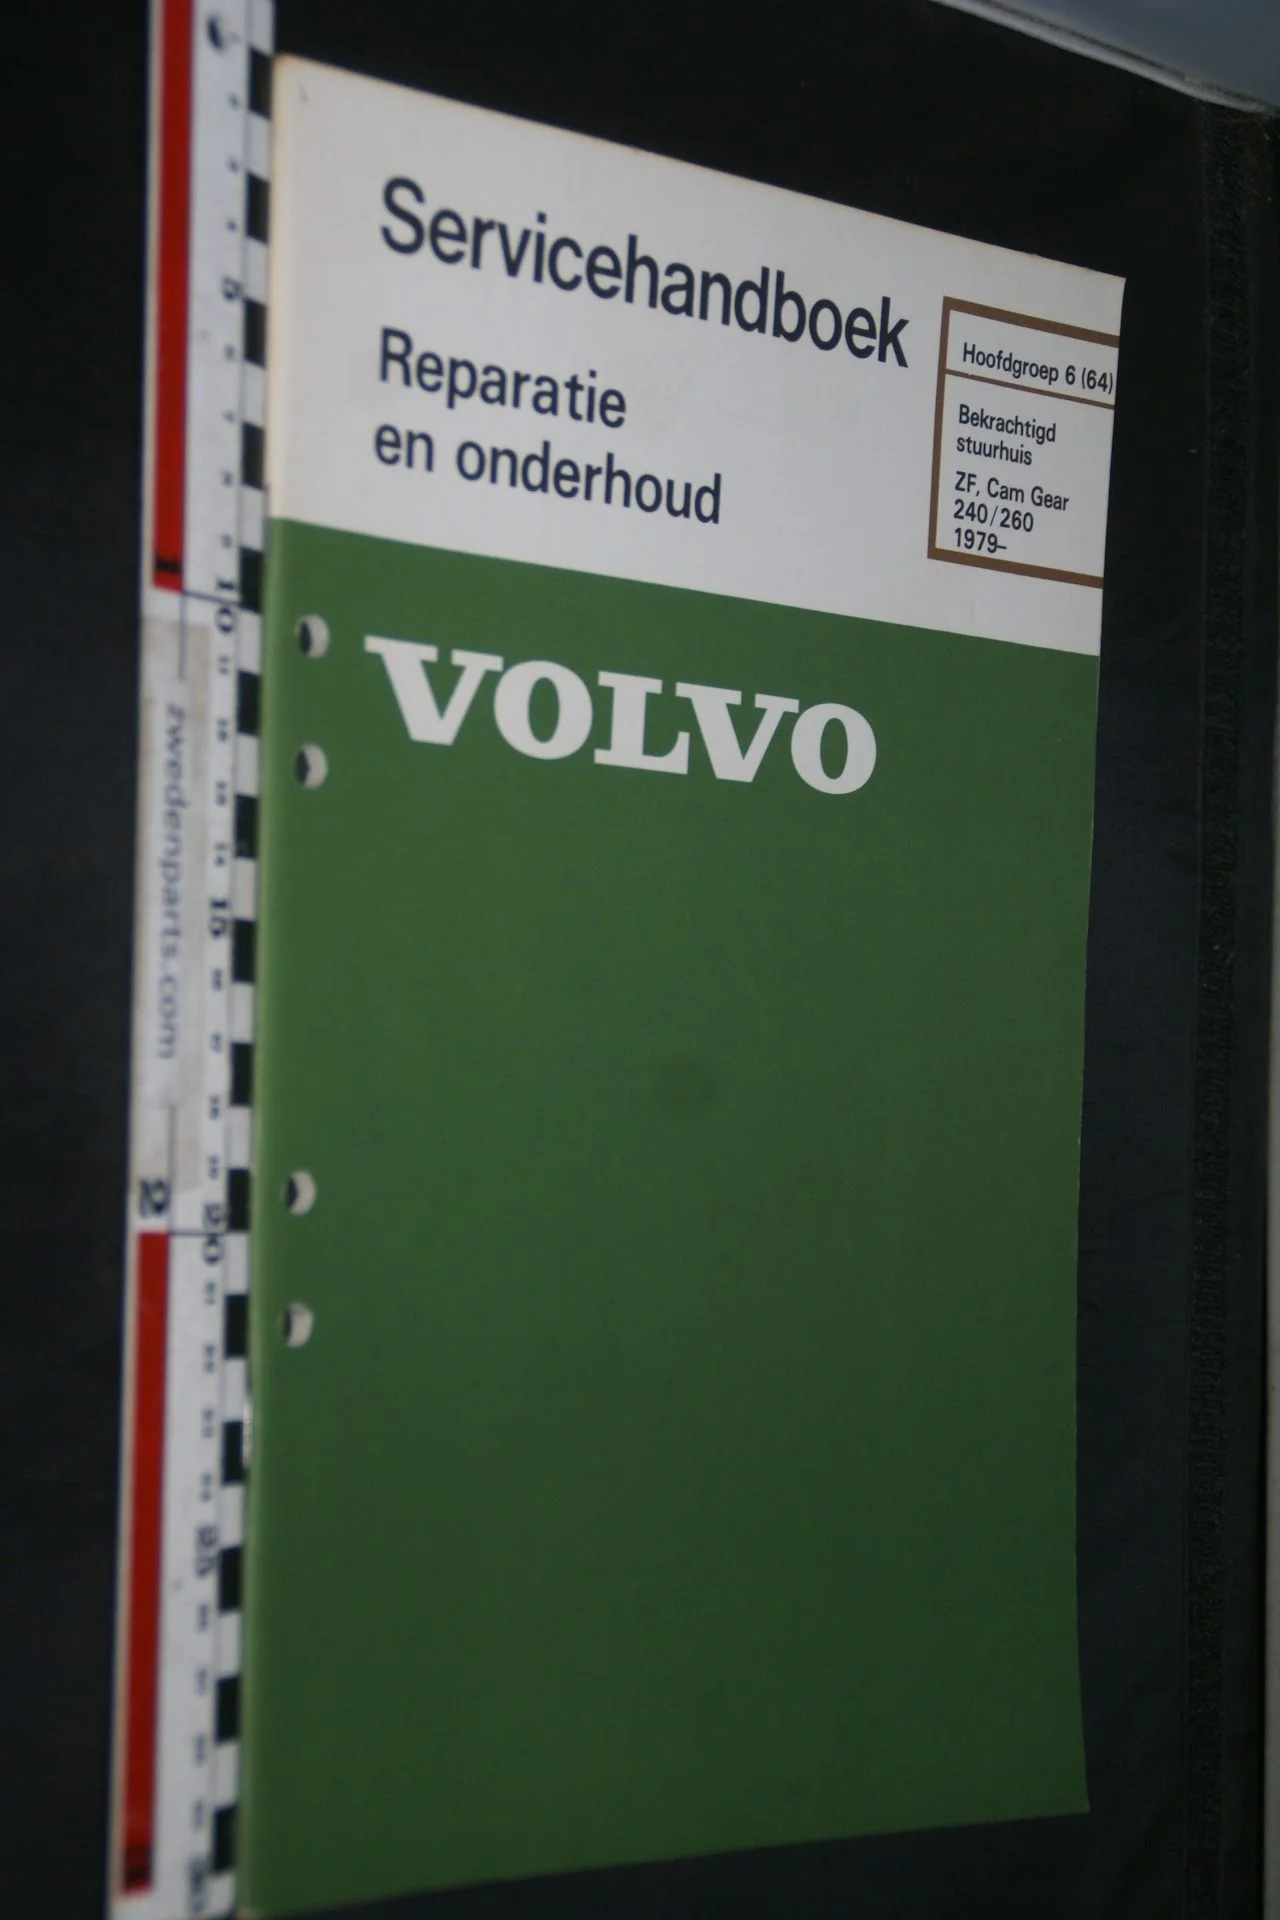 DSC06721 1980 origineel Volvo 240, 260 servicehandboek 6 (64) ZF stuurhuis 1 van 800 TP 30267-1